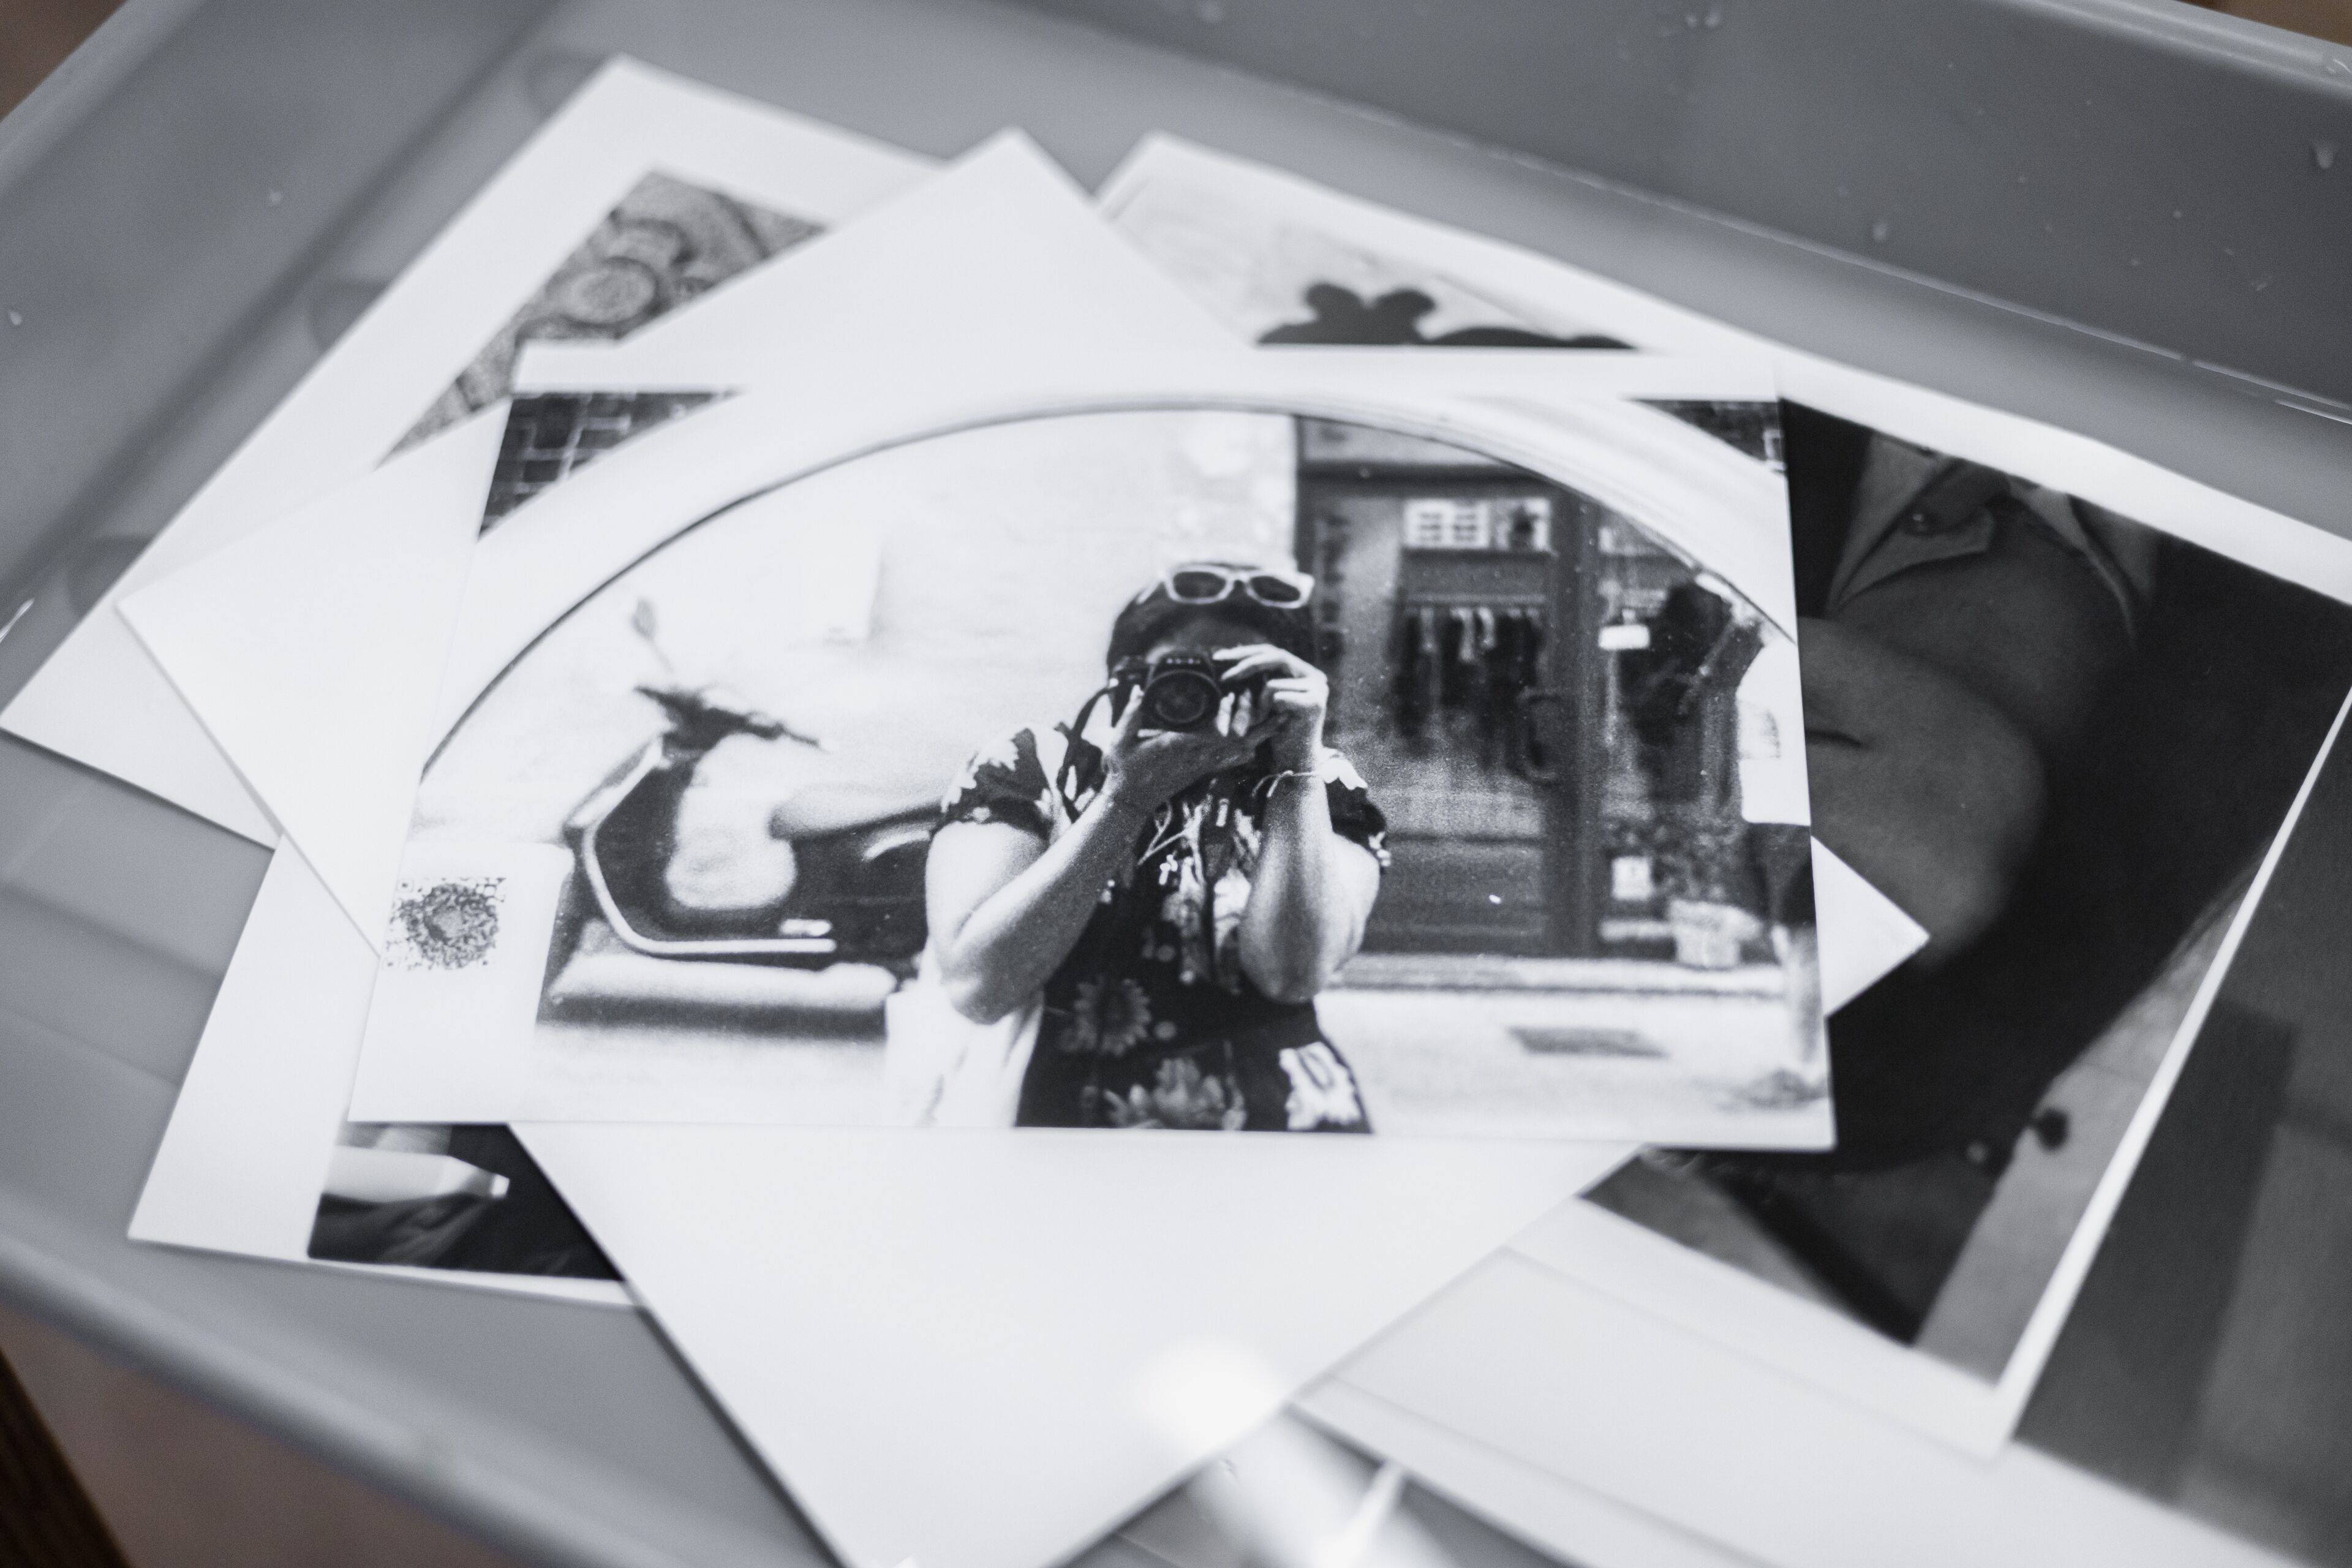 Colección de fotos en blanco y negro, con una imagen central que captura el reflejo del fotógrafo en un espejo.